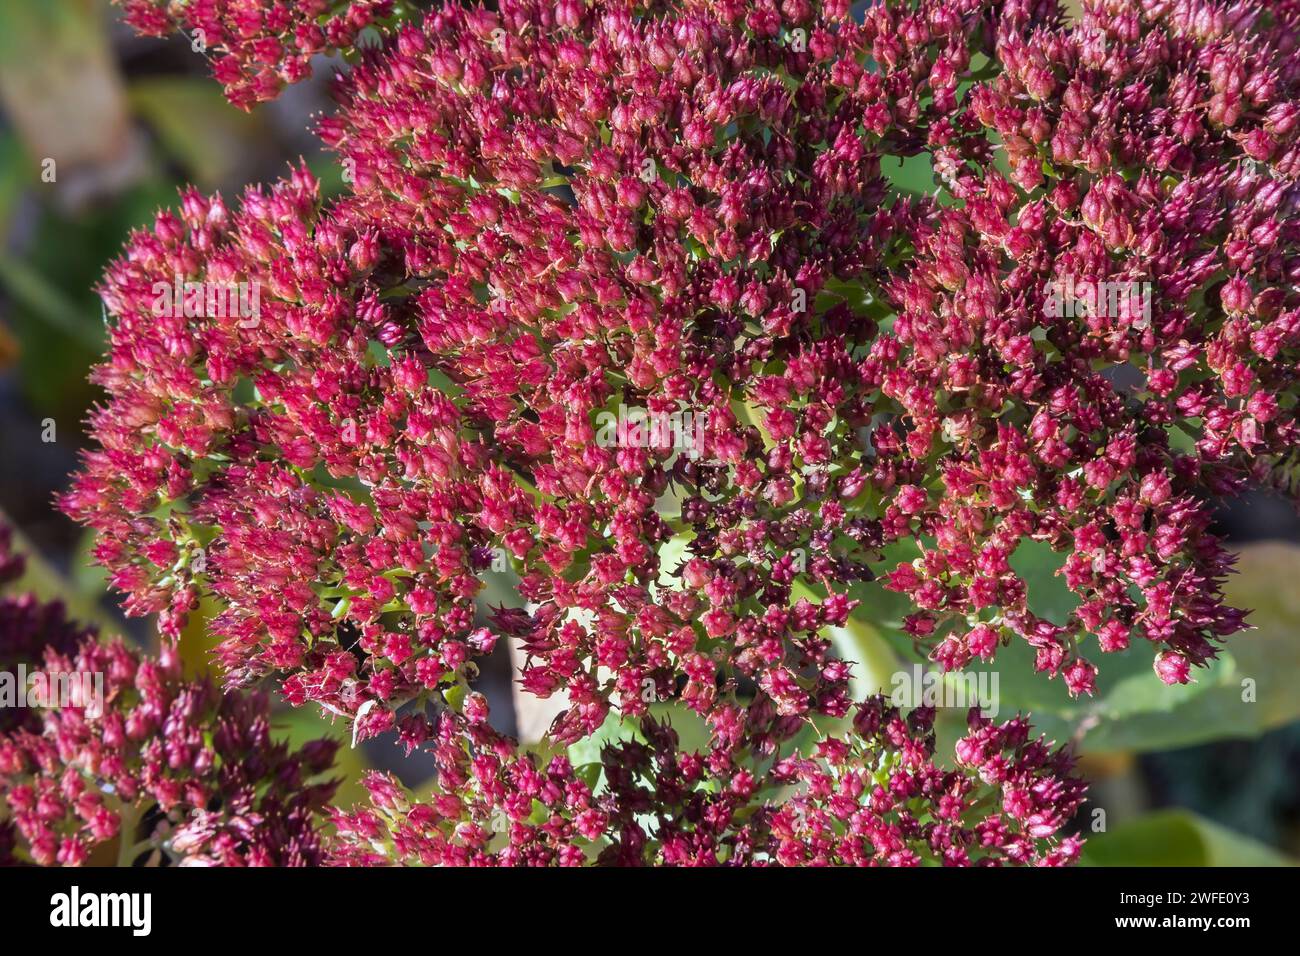 Sedum - Stonecrop in autumn. Stock Photo